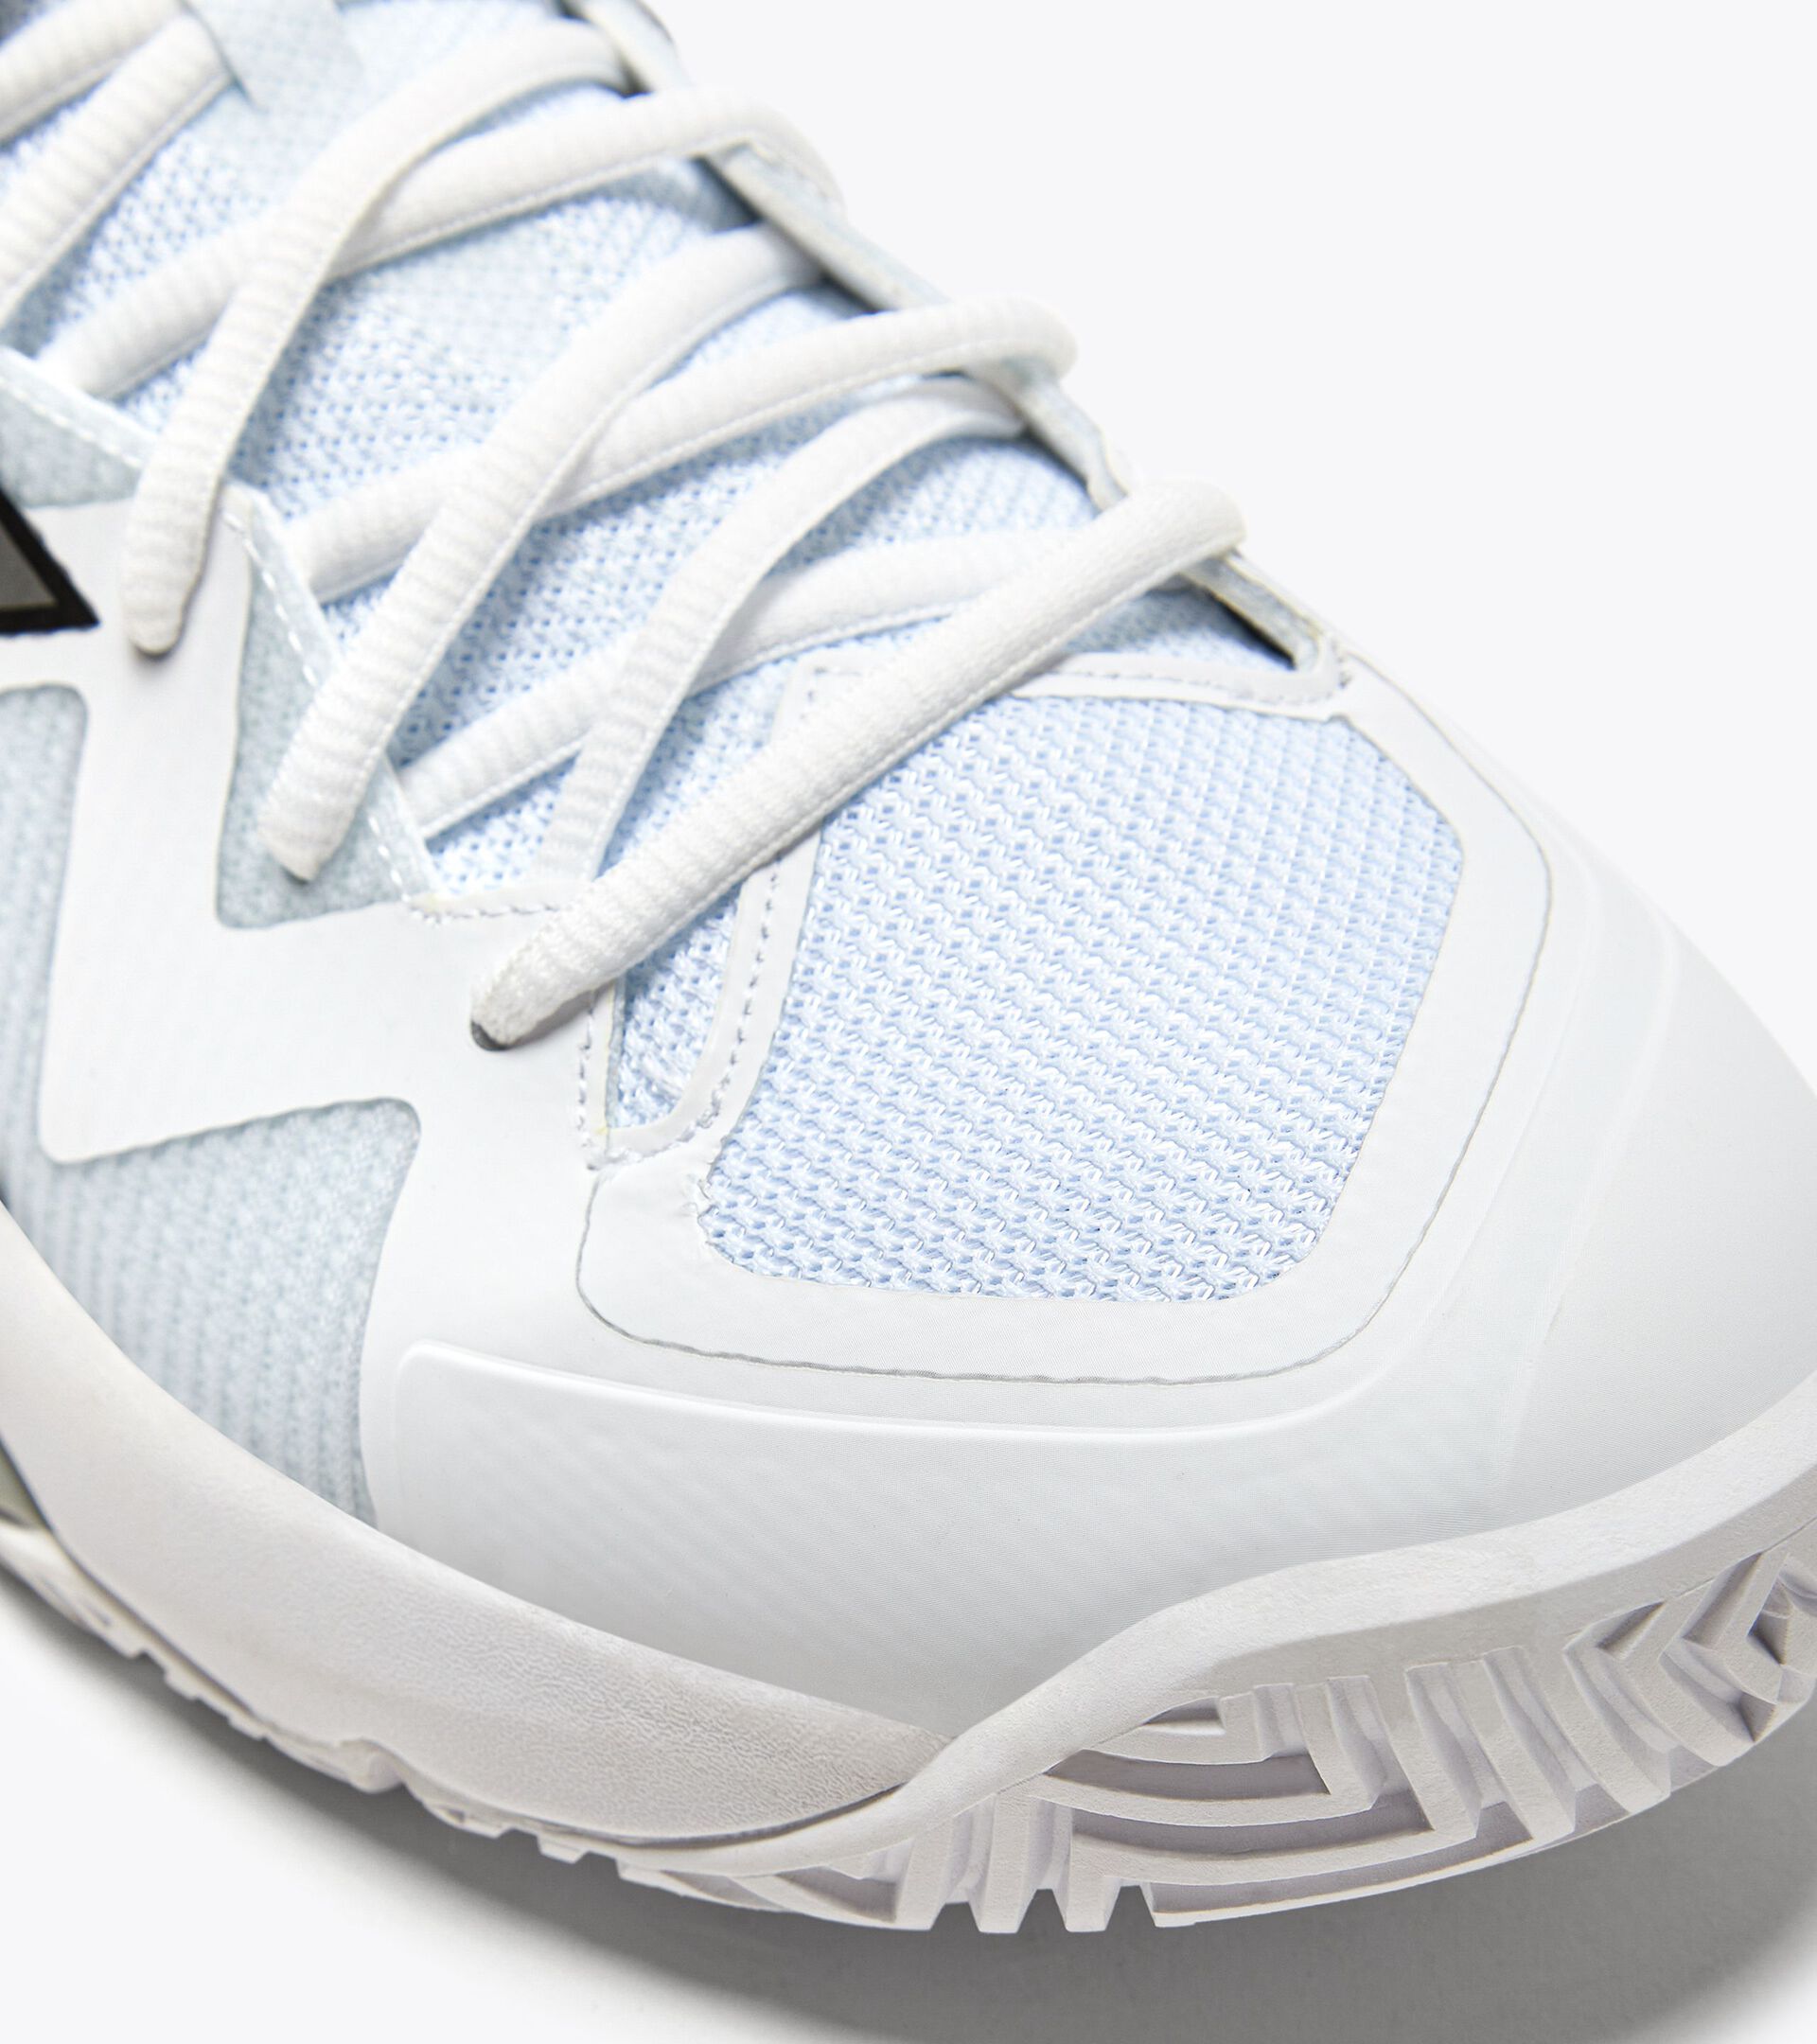 Chaussures de tennis pour terrains durs ou en terre battue - Homme  B.ICON 2 AG WEISS/ARGENT - Diadora